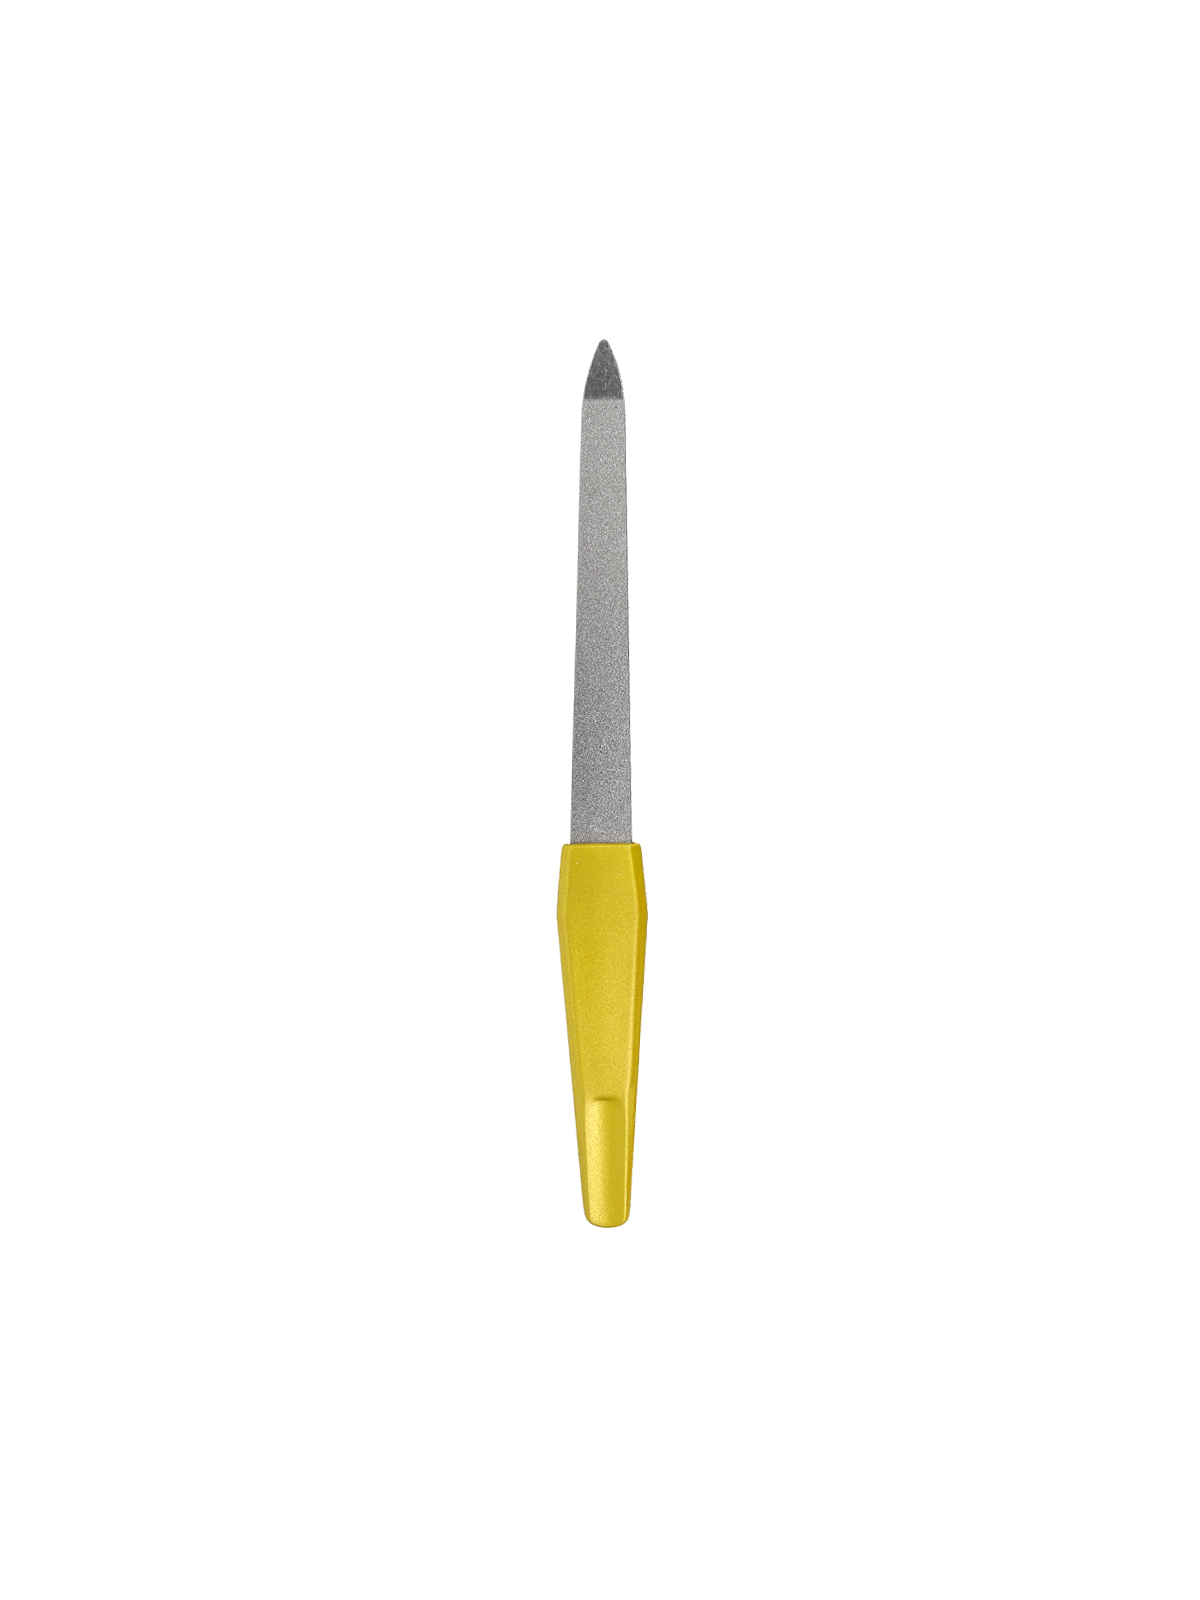 Пилка для ногтей металлическая на блистере "Ультрамарин", цвет ручки золото, цвет пилки серебро,15,5